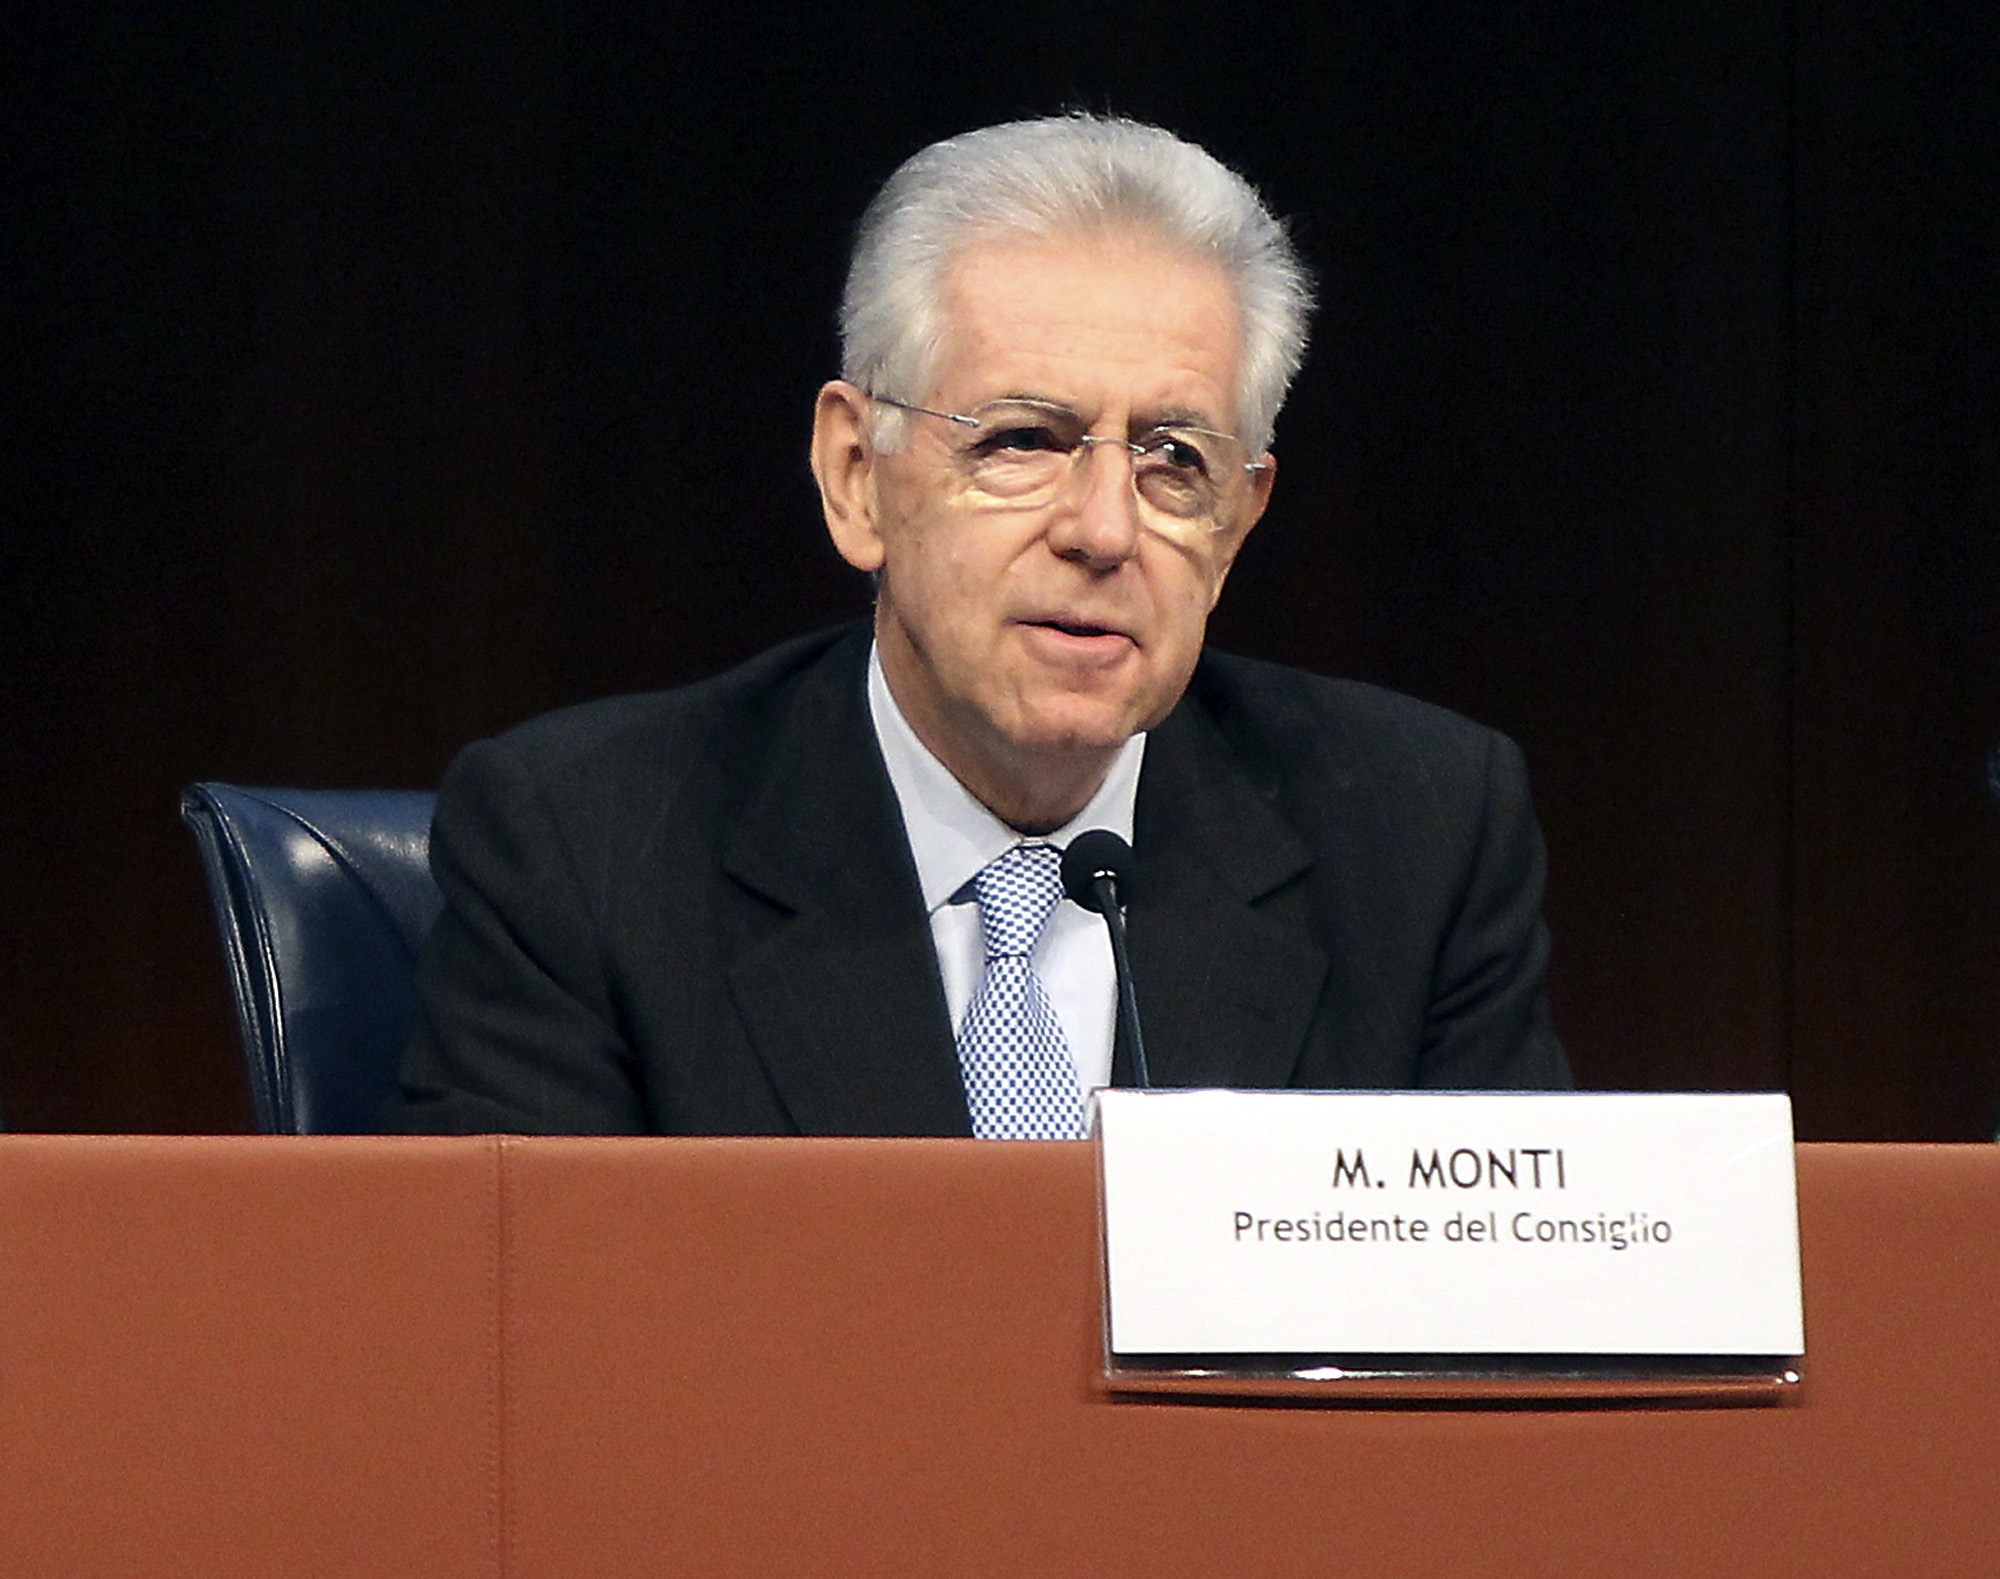 Μόντι: “Με την απόφαση Ντράγκι σώθηκε η Ιταλία και η Ευρώπη”